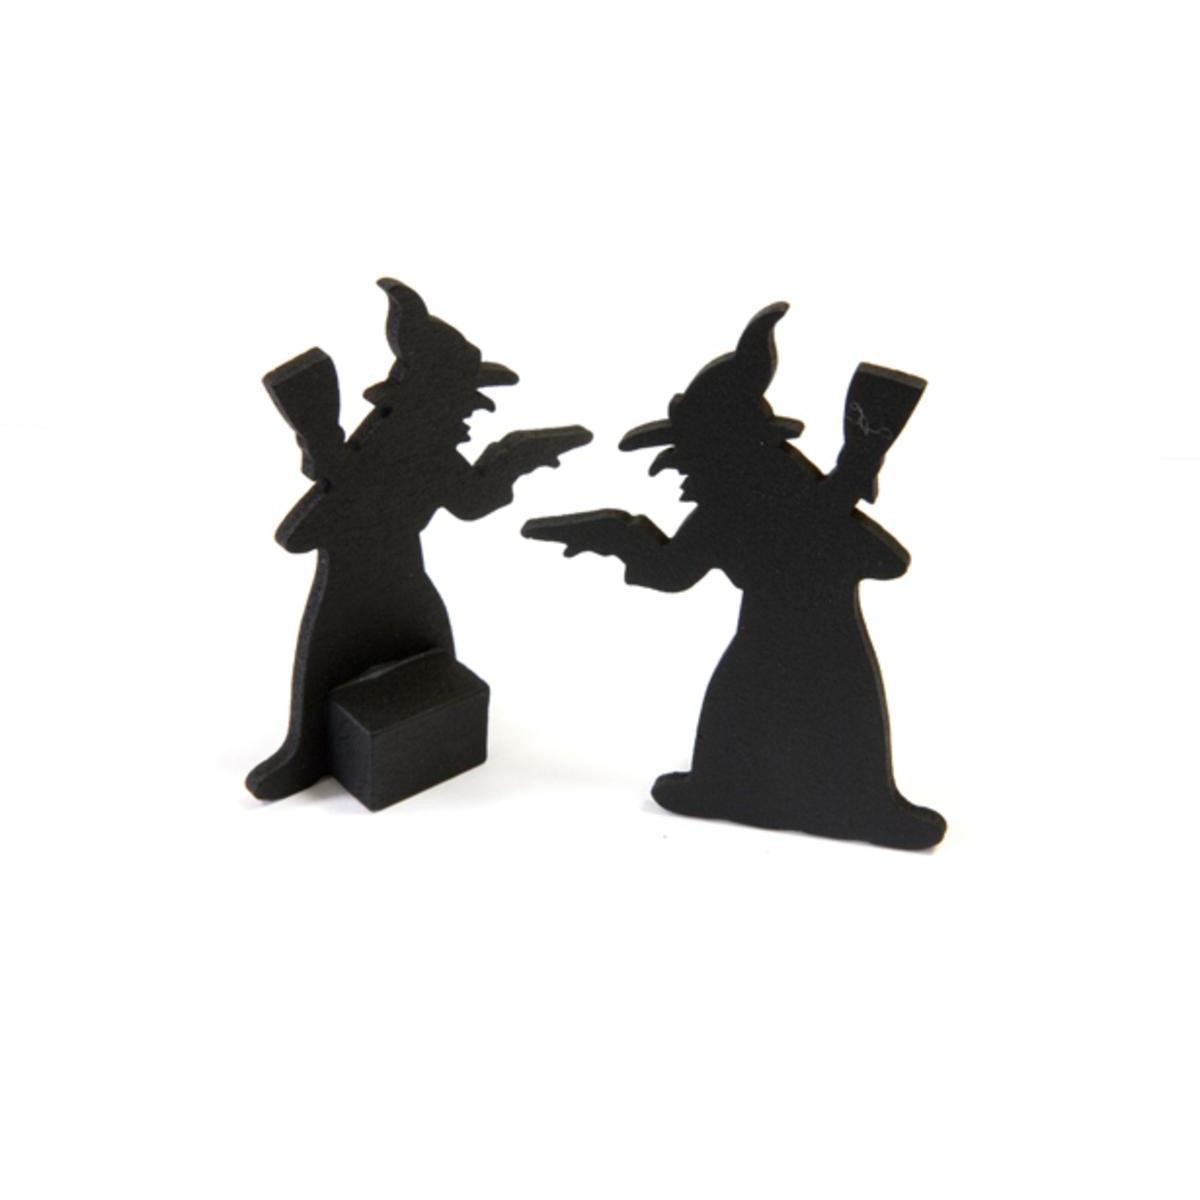 Lot de 2 silhouettes de sorcière - Bois - 6,5 x 4,5 cm - Noir